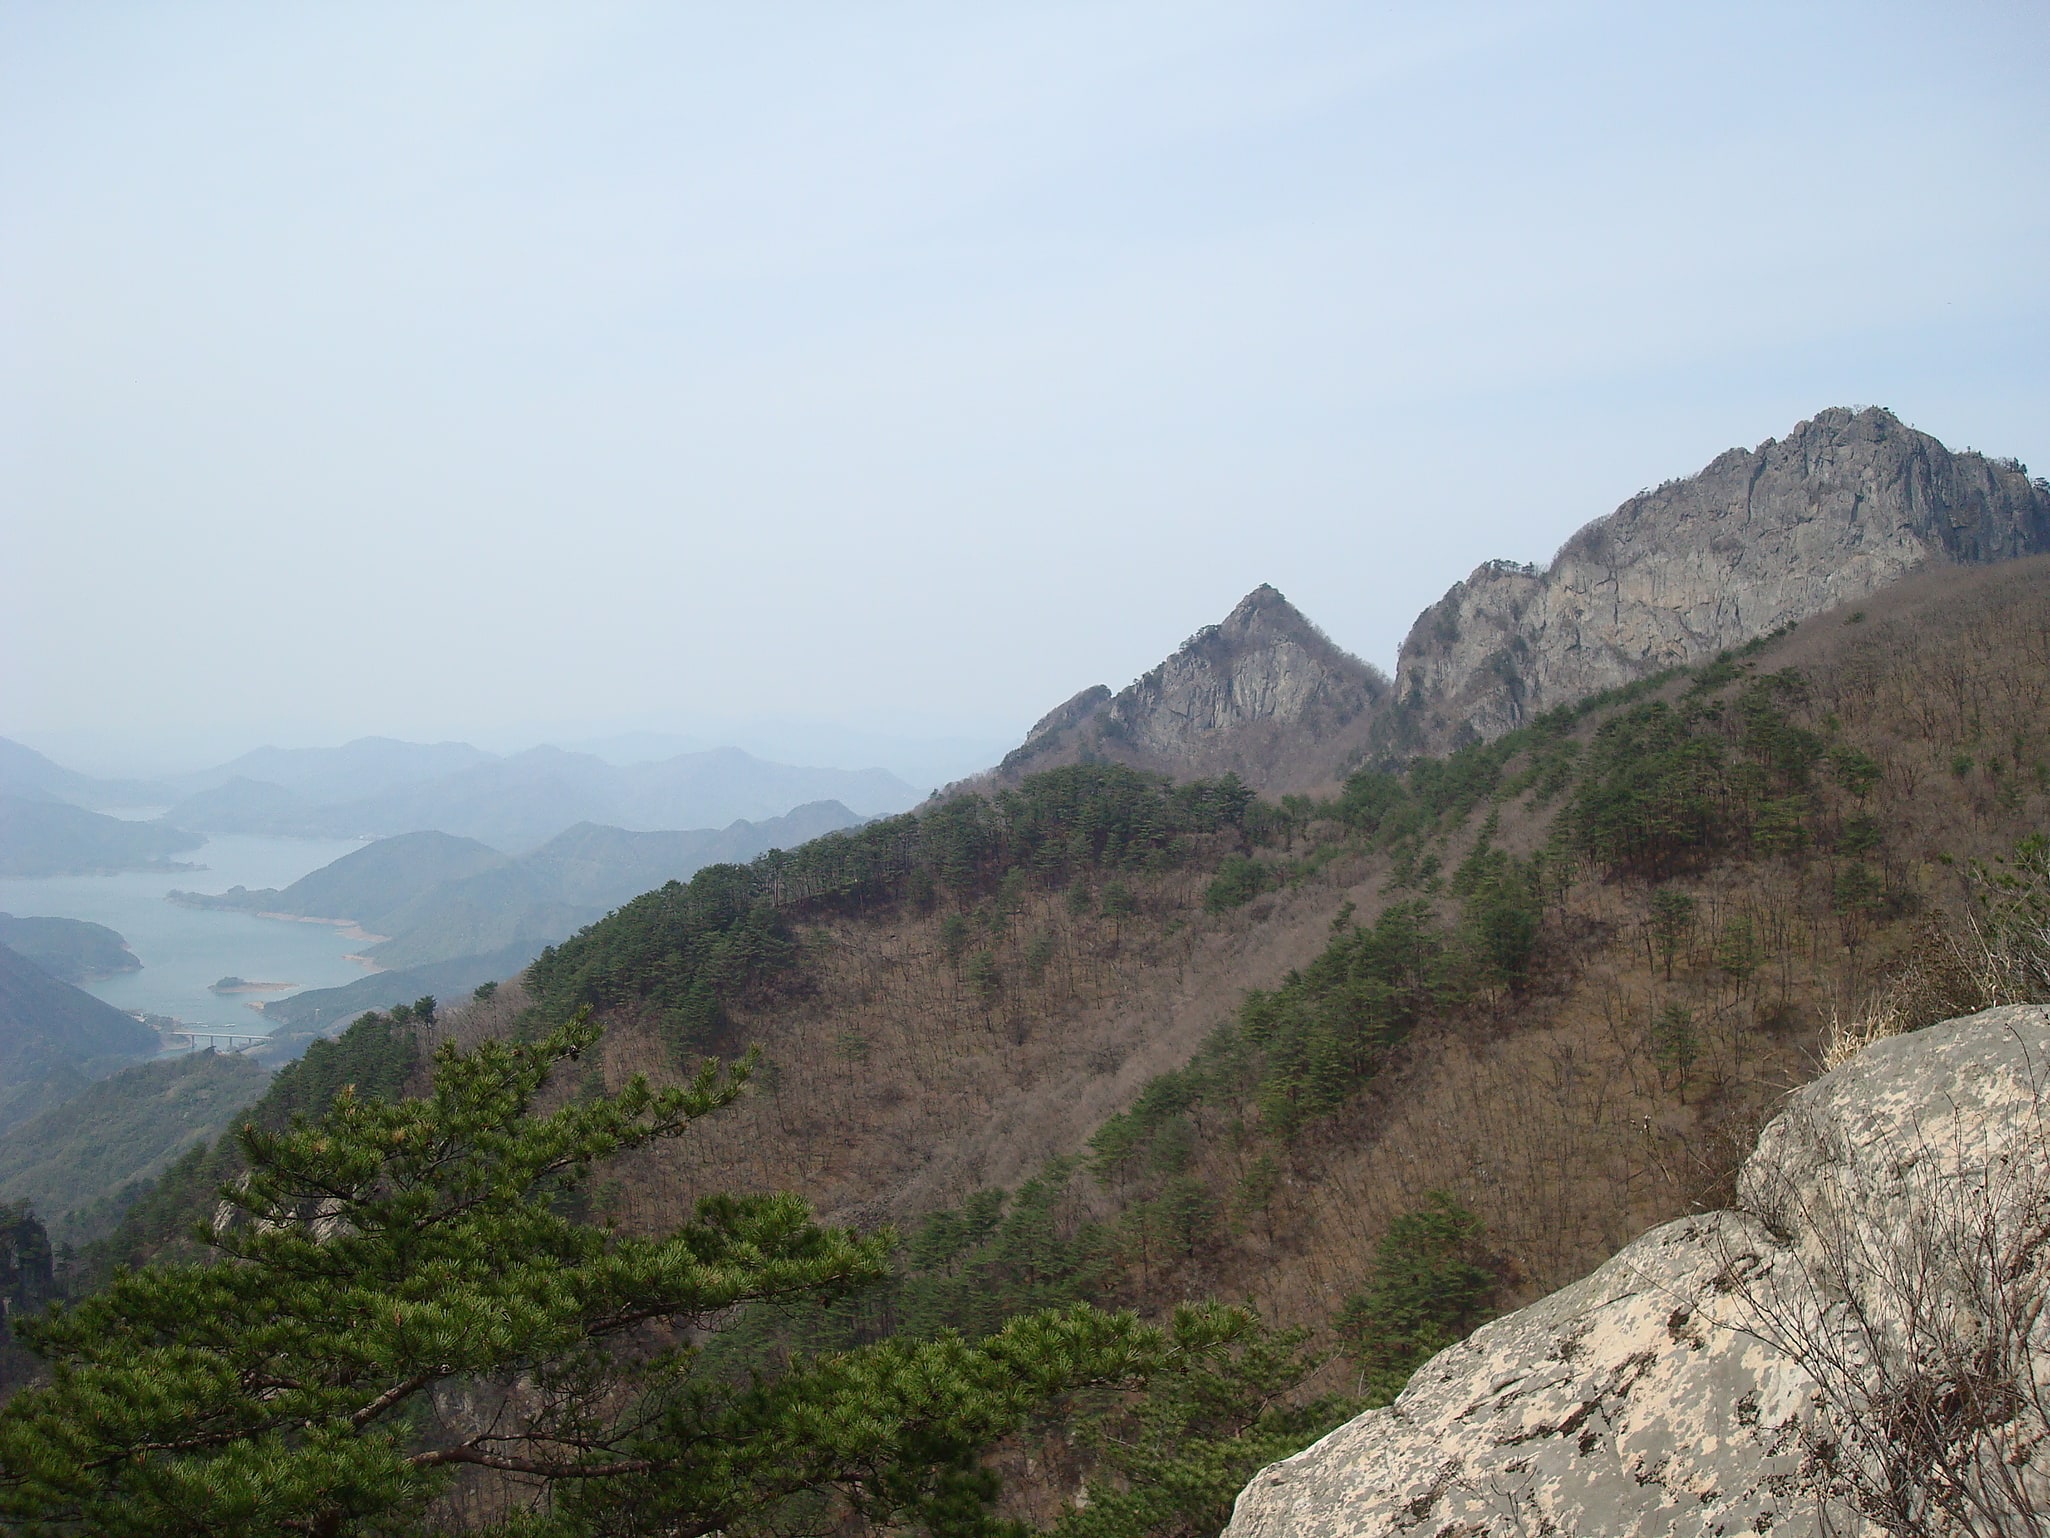 Woraksan National Park, South Korea